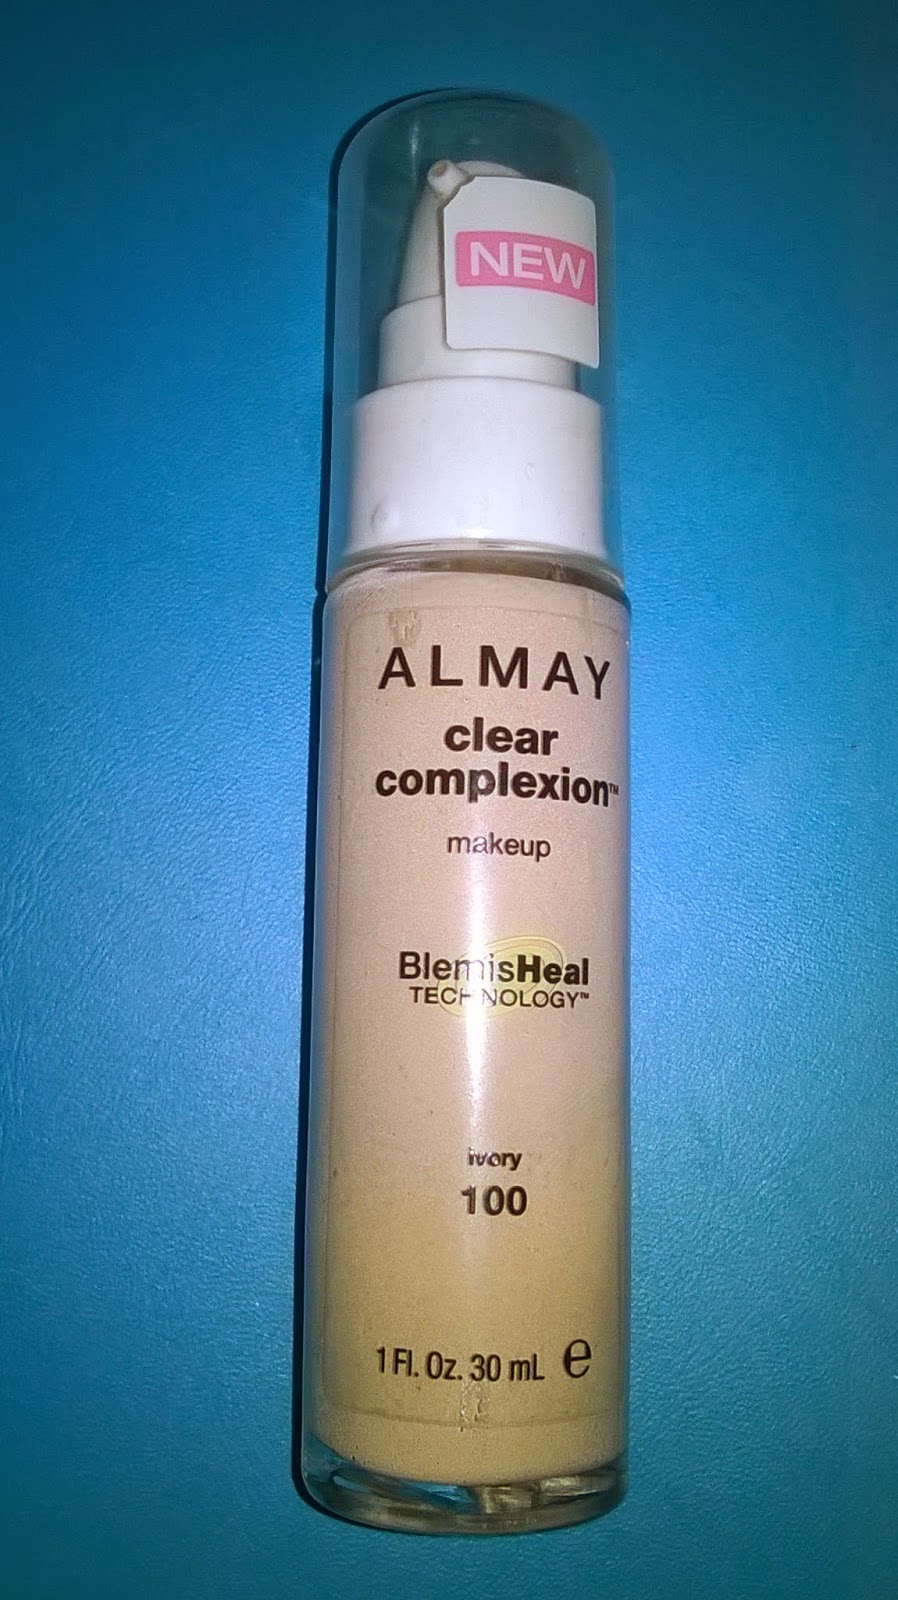 Base de Maquillaje Almay Clear Complexion: ¿Sufres de alergias o acné"